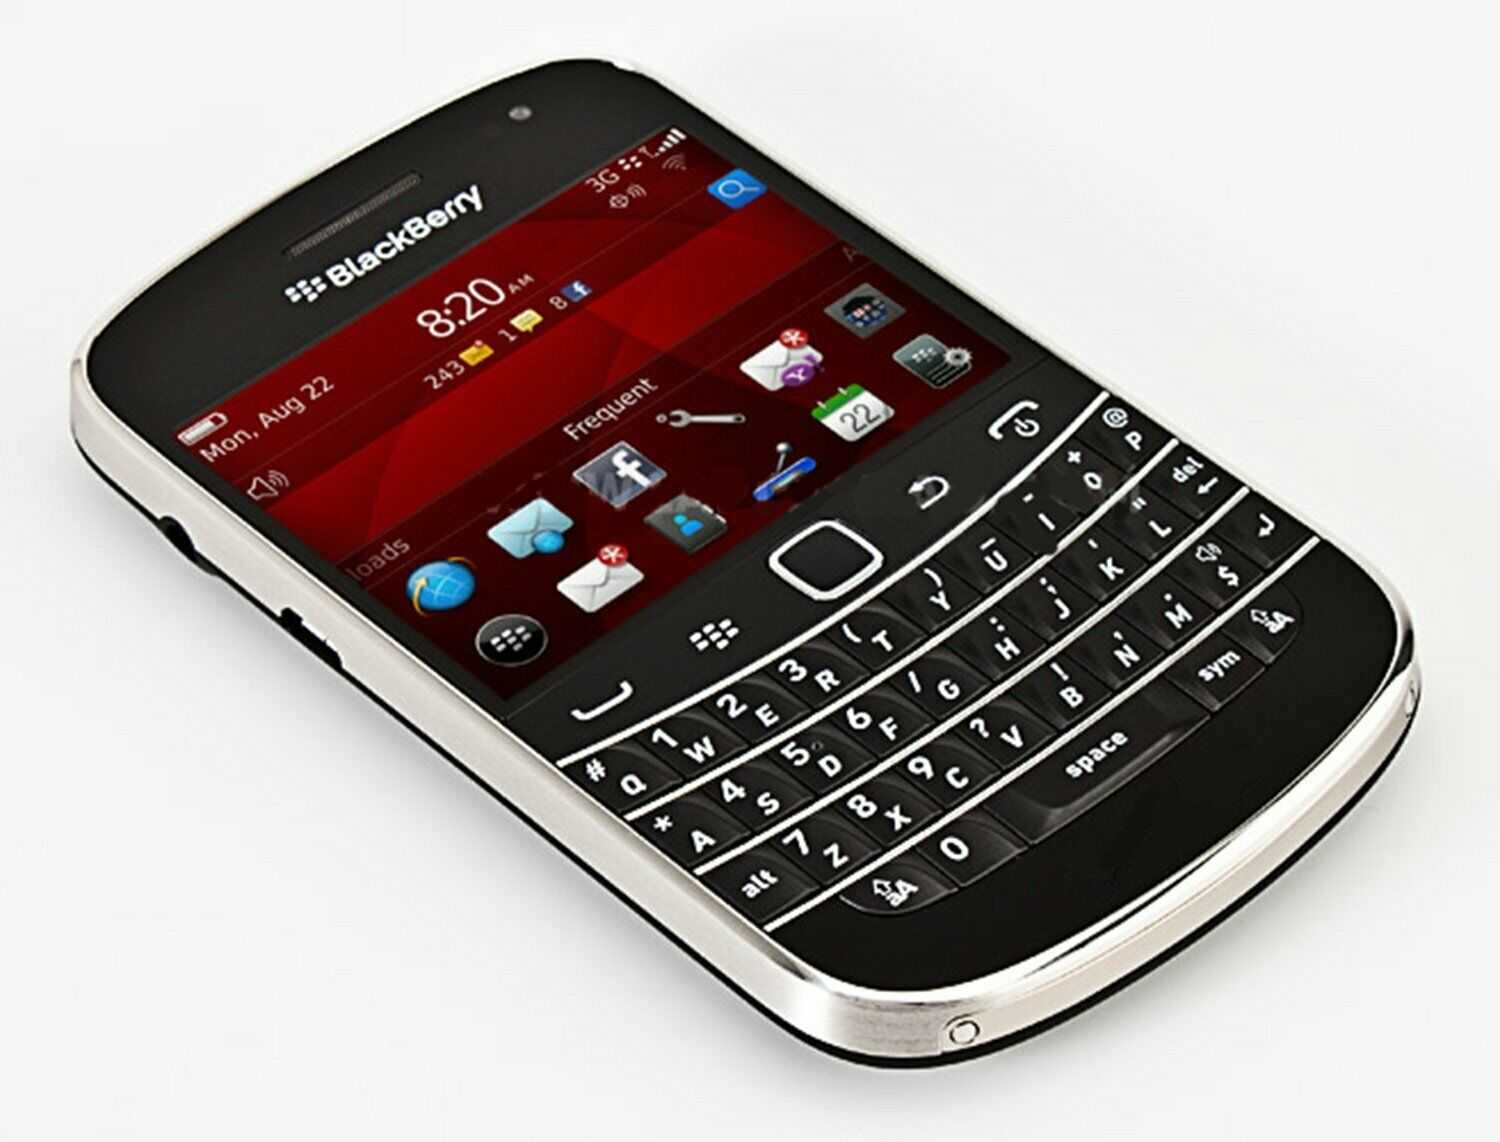 Мобильный телефон BlackBerry Bold 9930 - подробные характеристики обзоры видео фото Цены в интернет-магазинах где можно купить мобильный телефон BlackBerry Bold 9930